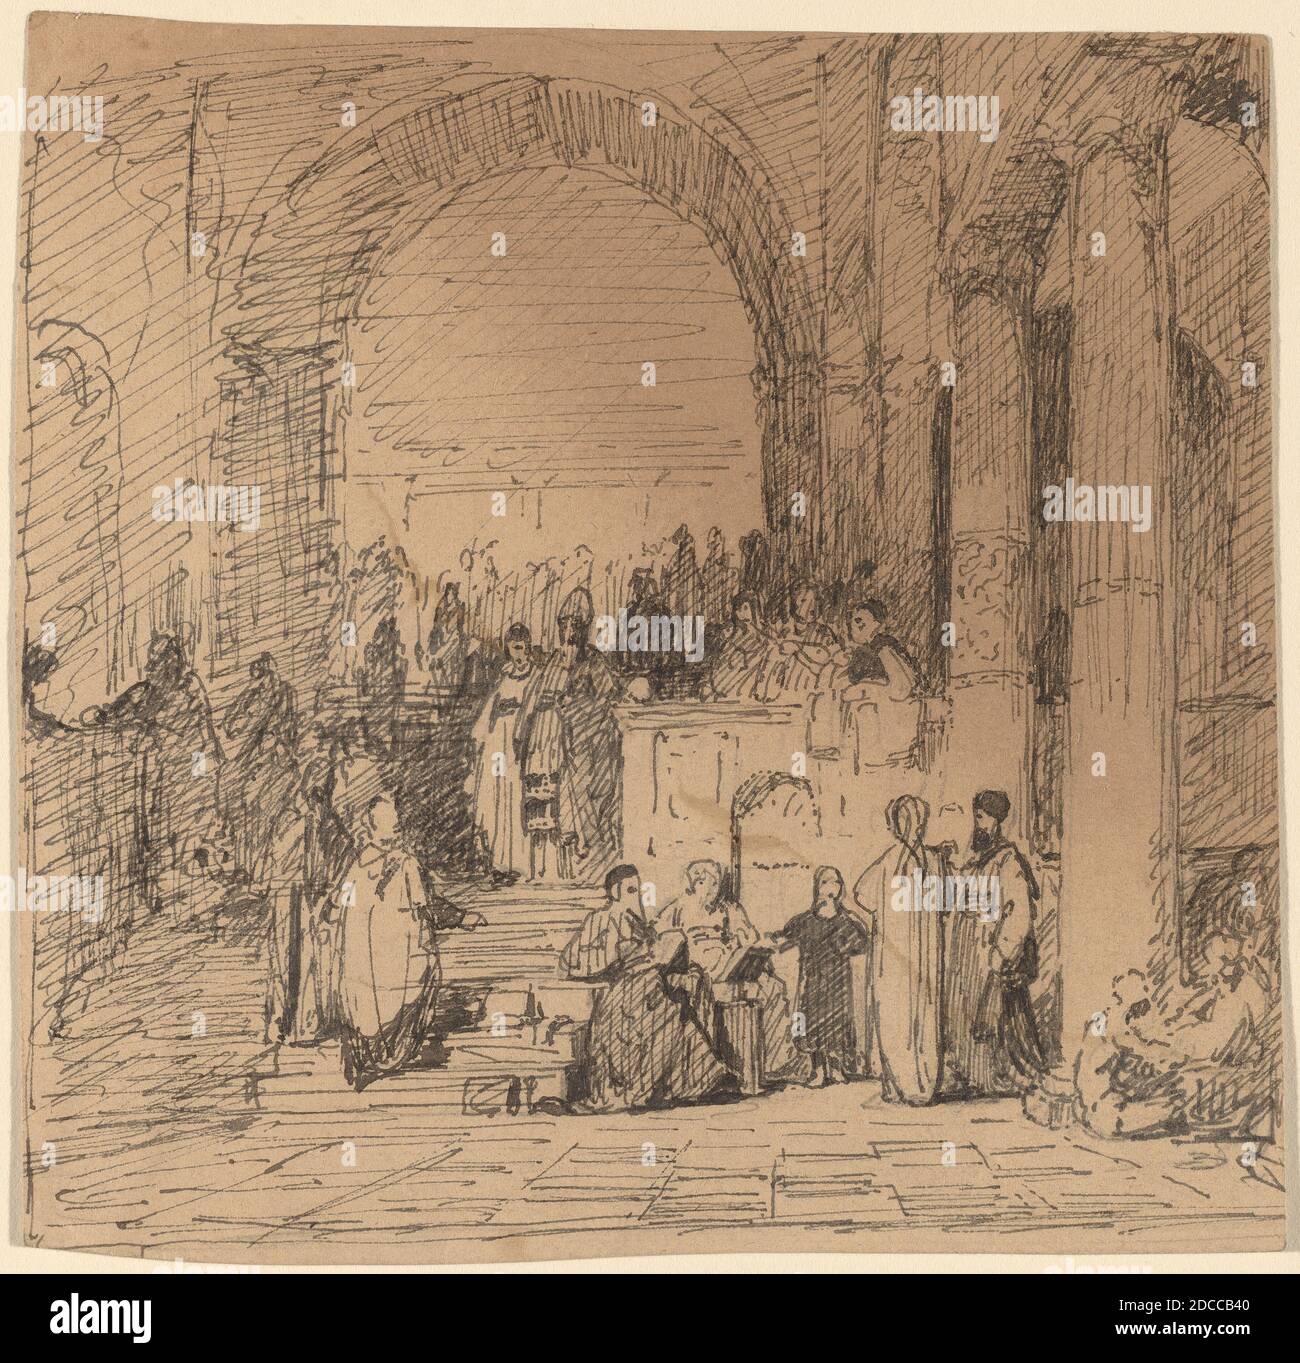 Elihu Vedder, (artiste), cuisine américaine, 1836 - 1923, étude après l'ancien maître, c. 1858, stylo et encre sur papier vélin, feuille : 11.4 × 11.5 cm (4 1/2 × 4 1/2 po Banque D'Images